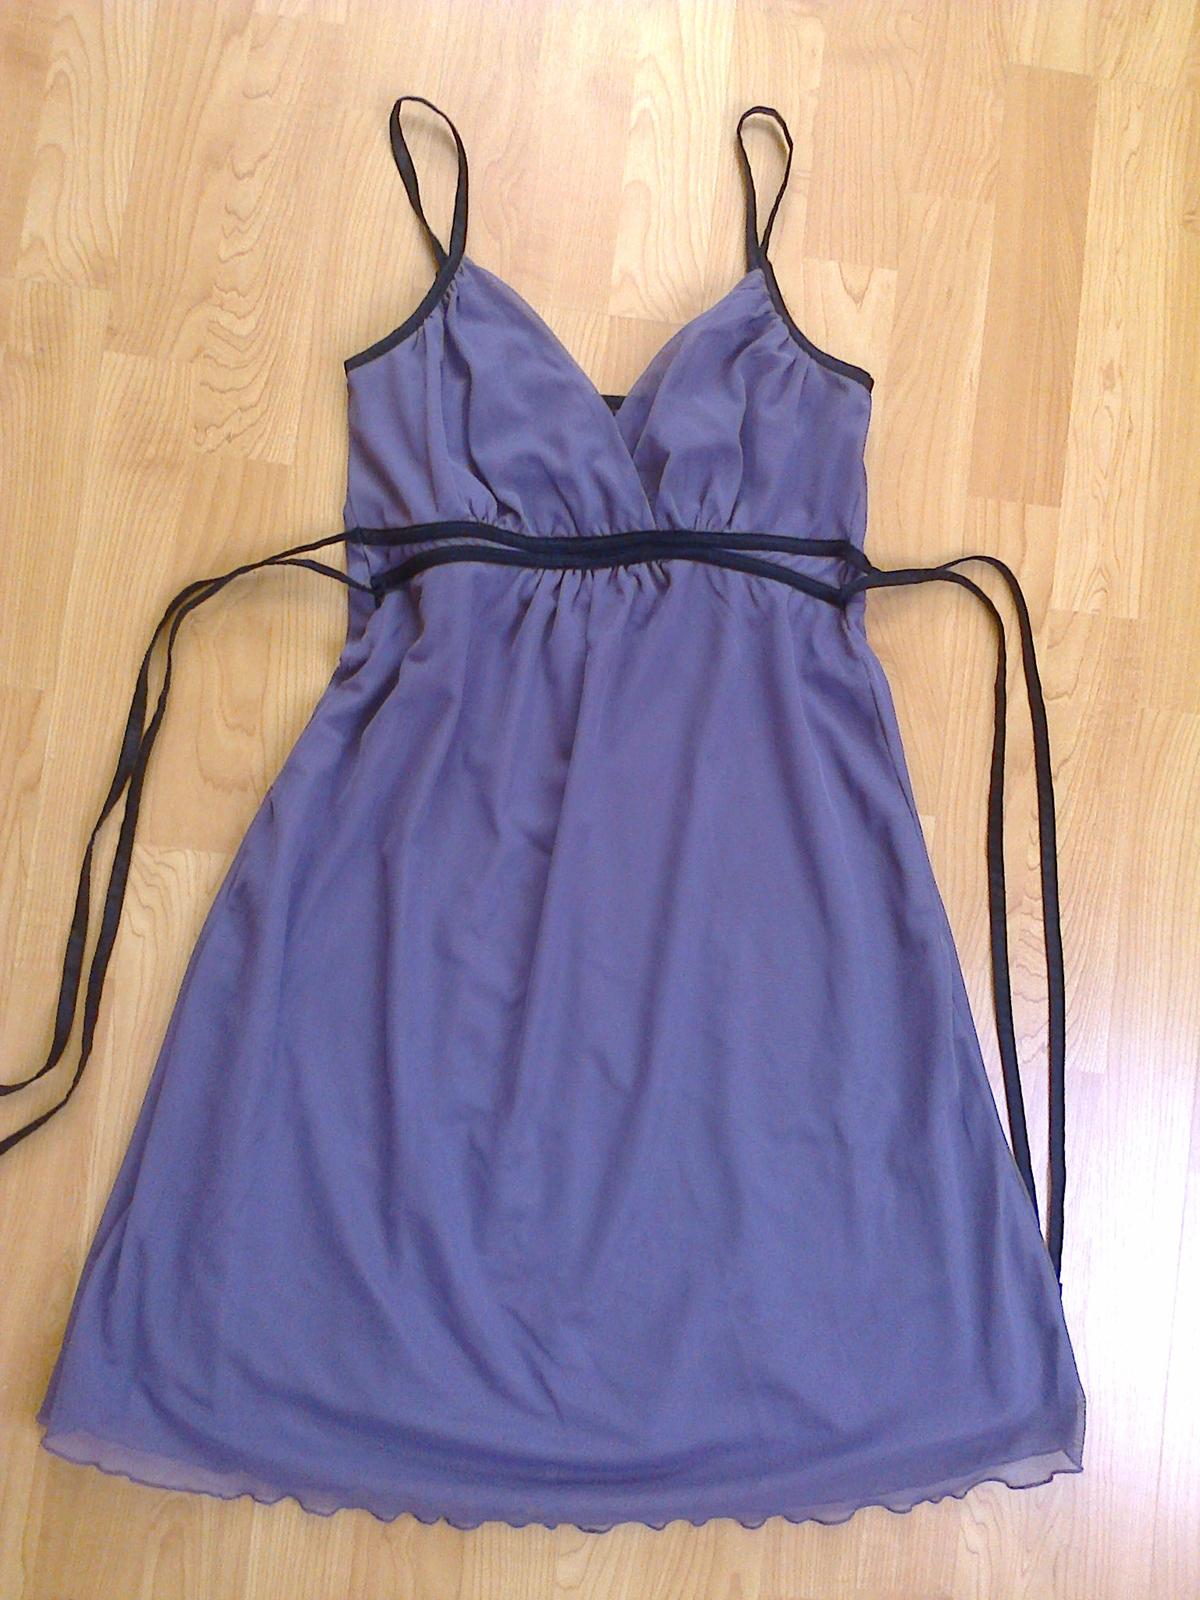 Fialové šaty na ramínka - Obrázek č. 2